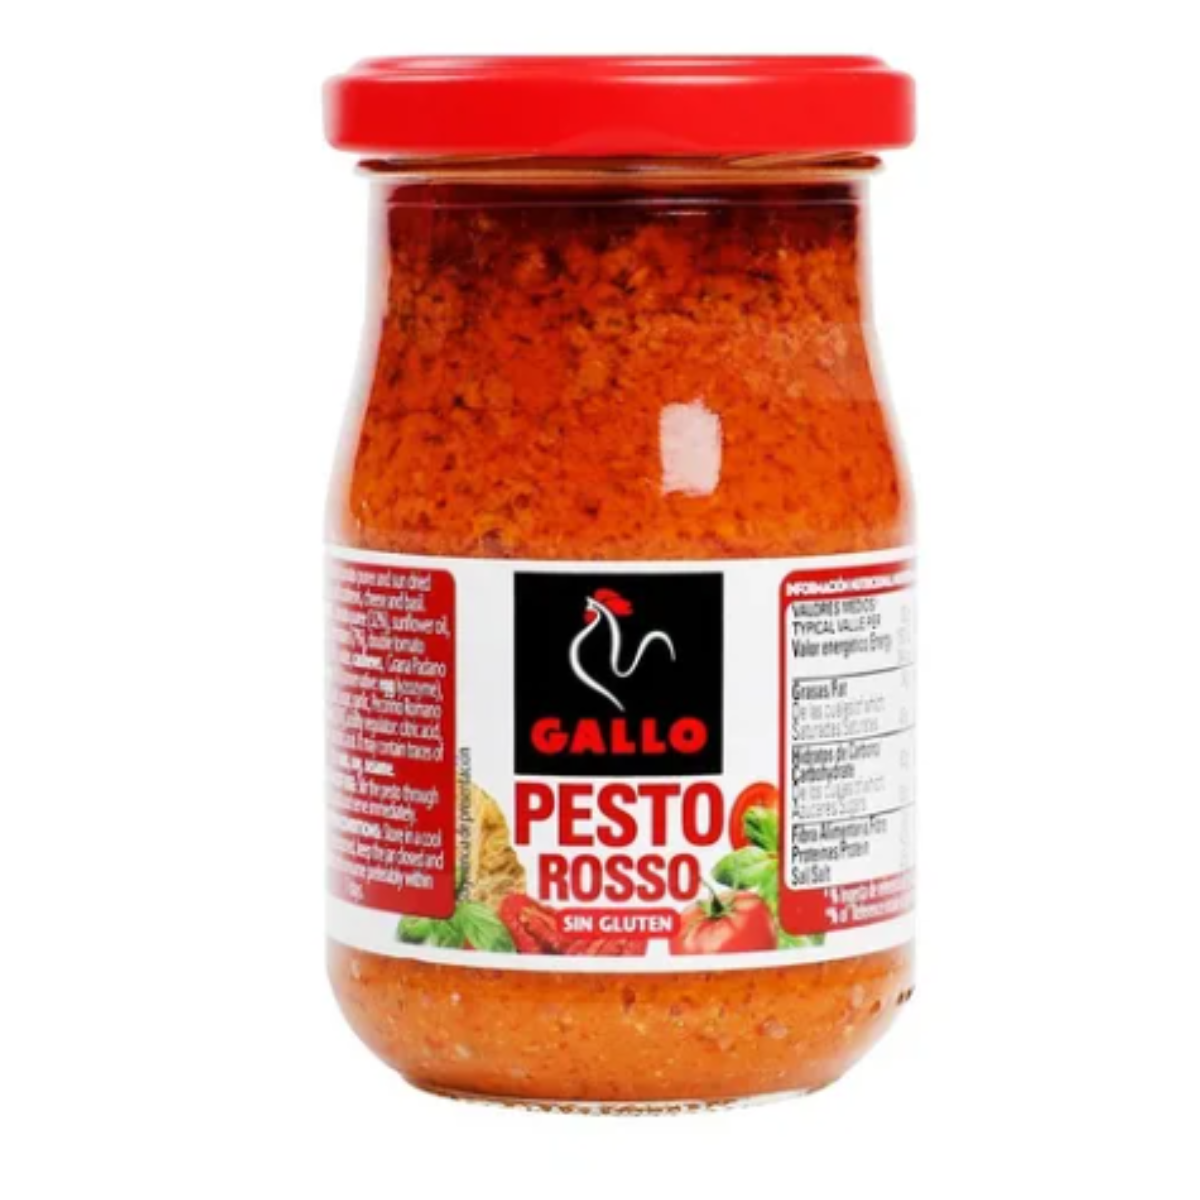 Salsa Pesto Rosso 190g - Pastas La casa del bacalao